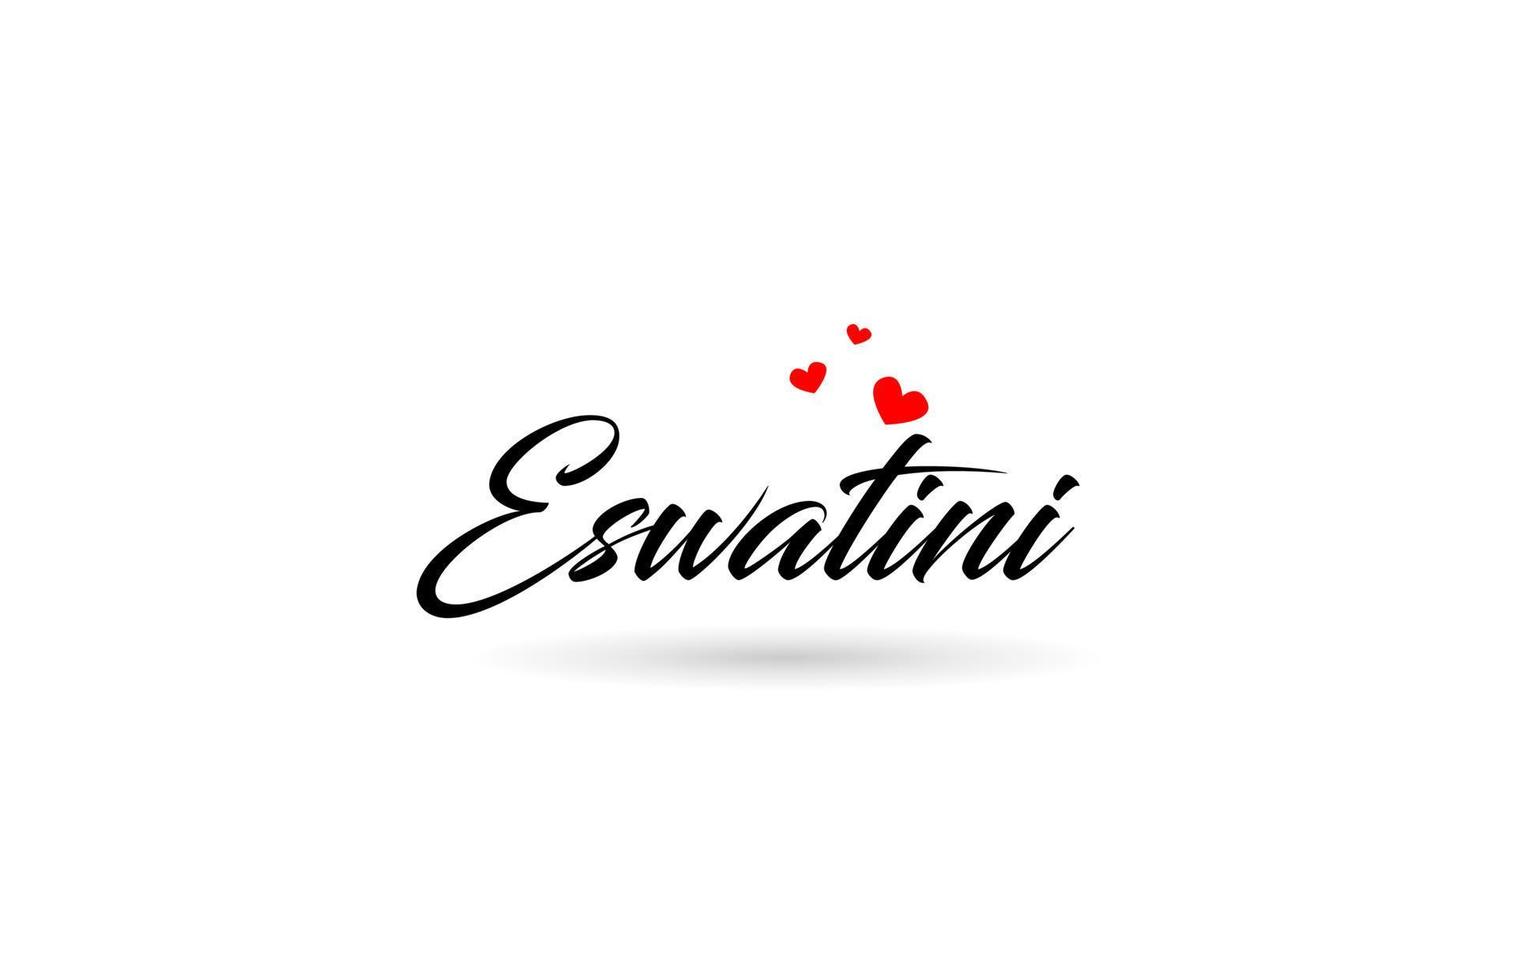 eswatini namn Land ord med tre röd kärlek hjärta. kreativ typografi logotyp ikon design vektor